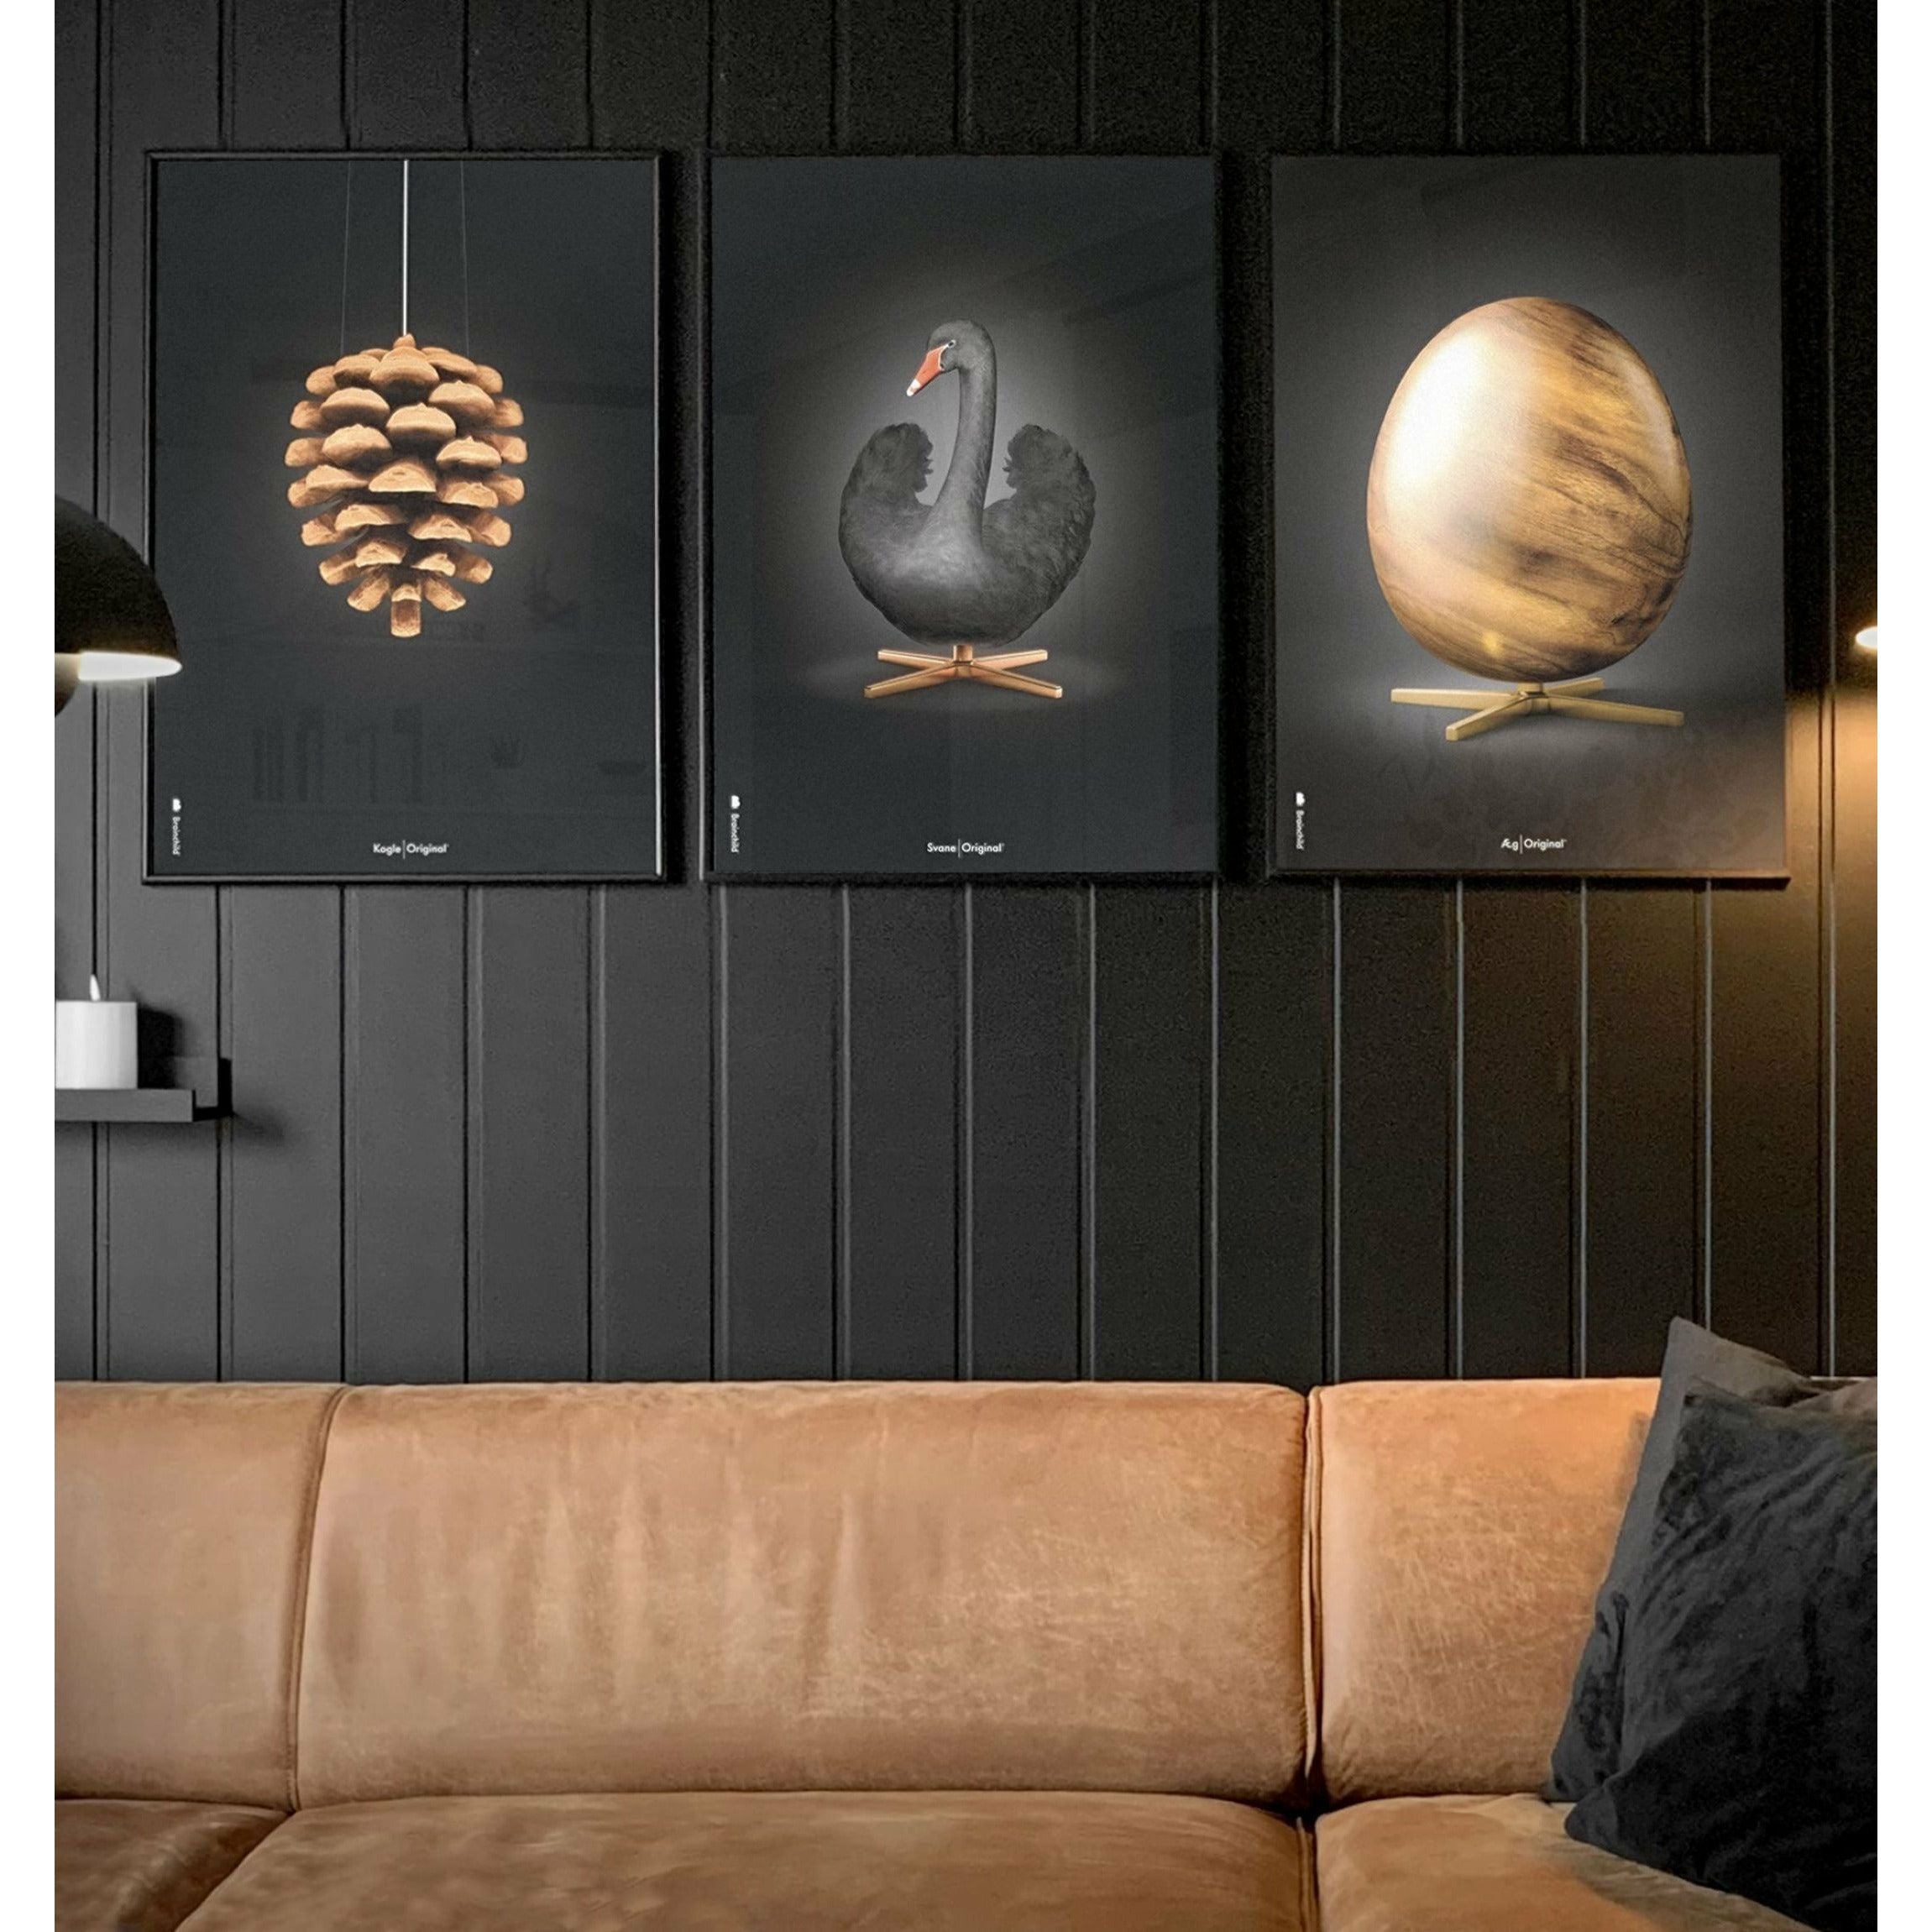 Pomysły plakat jaja, rama wykonana z czarnego lakierowanego drewna 30x40 cm, czarny